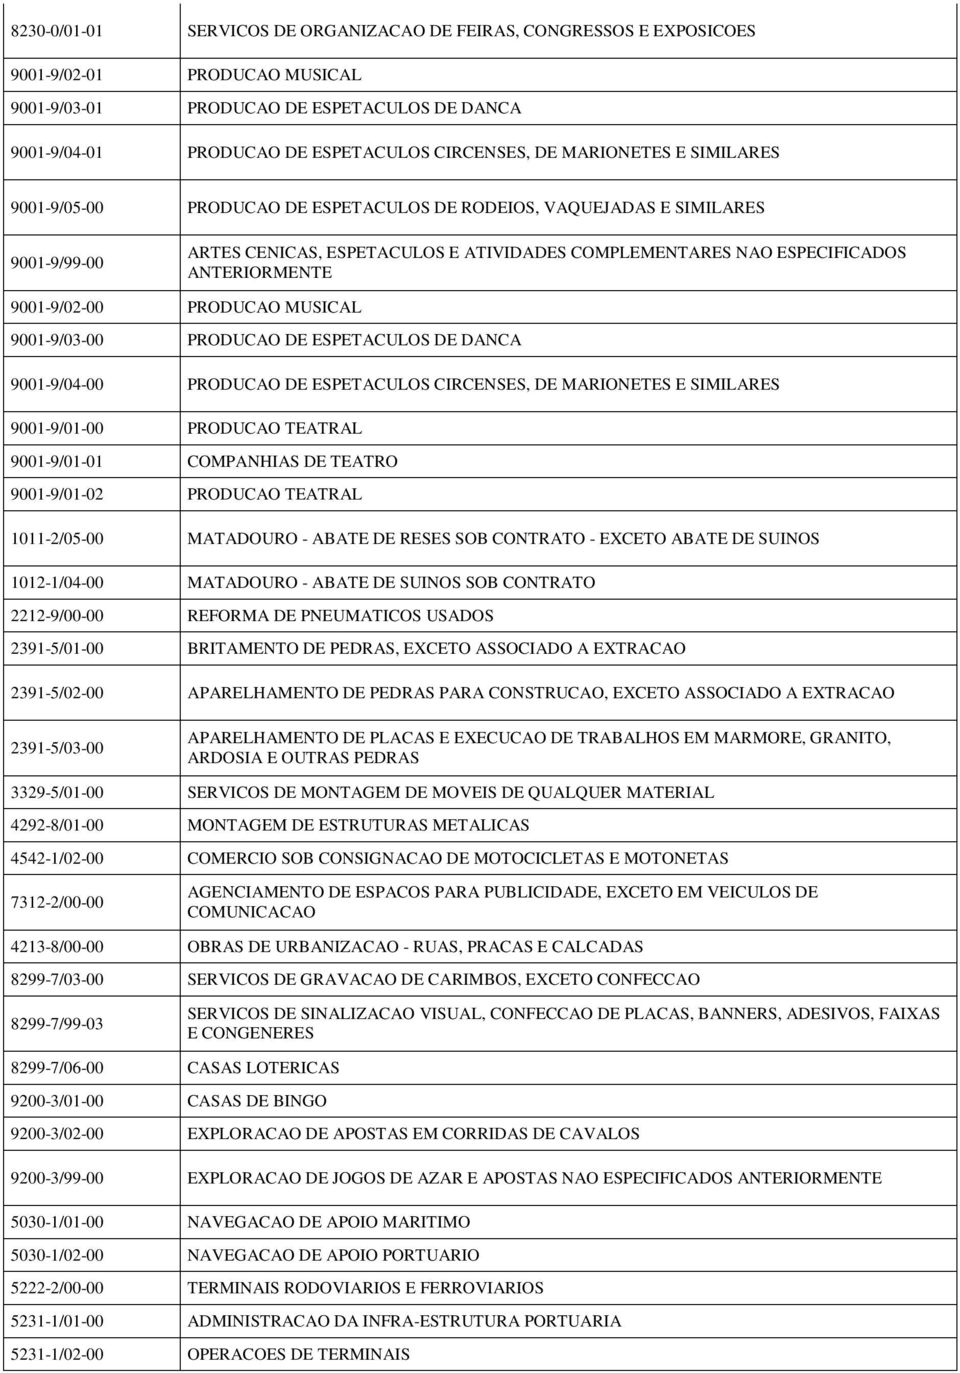 PRODUCAO MUSICAL 9001-9/03-00 PRODUCAO DE ESPETACULOS DE DANCA 9001-9/04-00 PRODUCAO DE ESPETACULOS CIRCENSES, DE MARIONETES E SIMILARES 9001-9/01-00 PRODUCAO TEATRAL 9001-9/01-01 COMPANHIAS DE